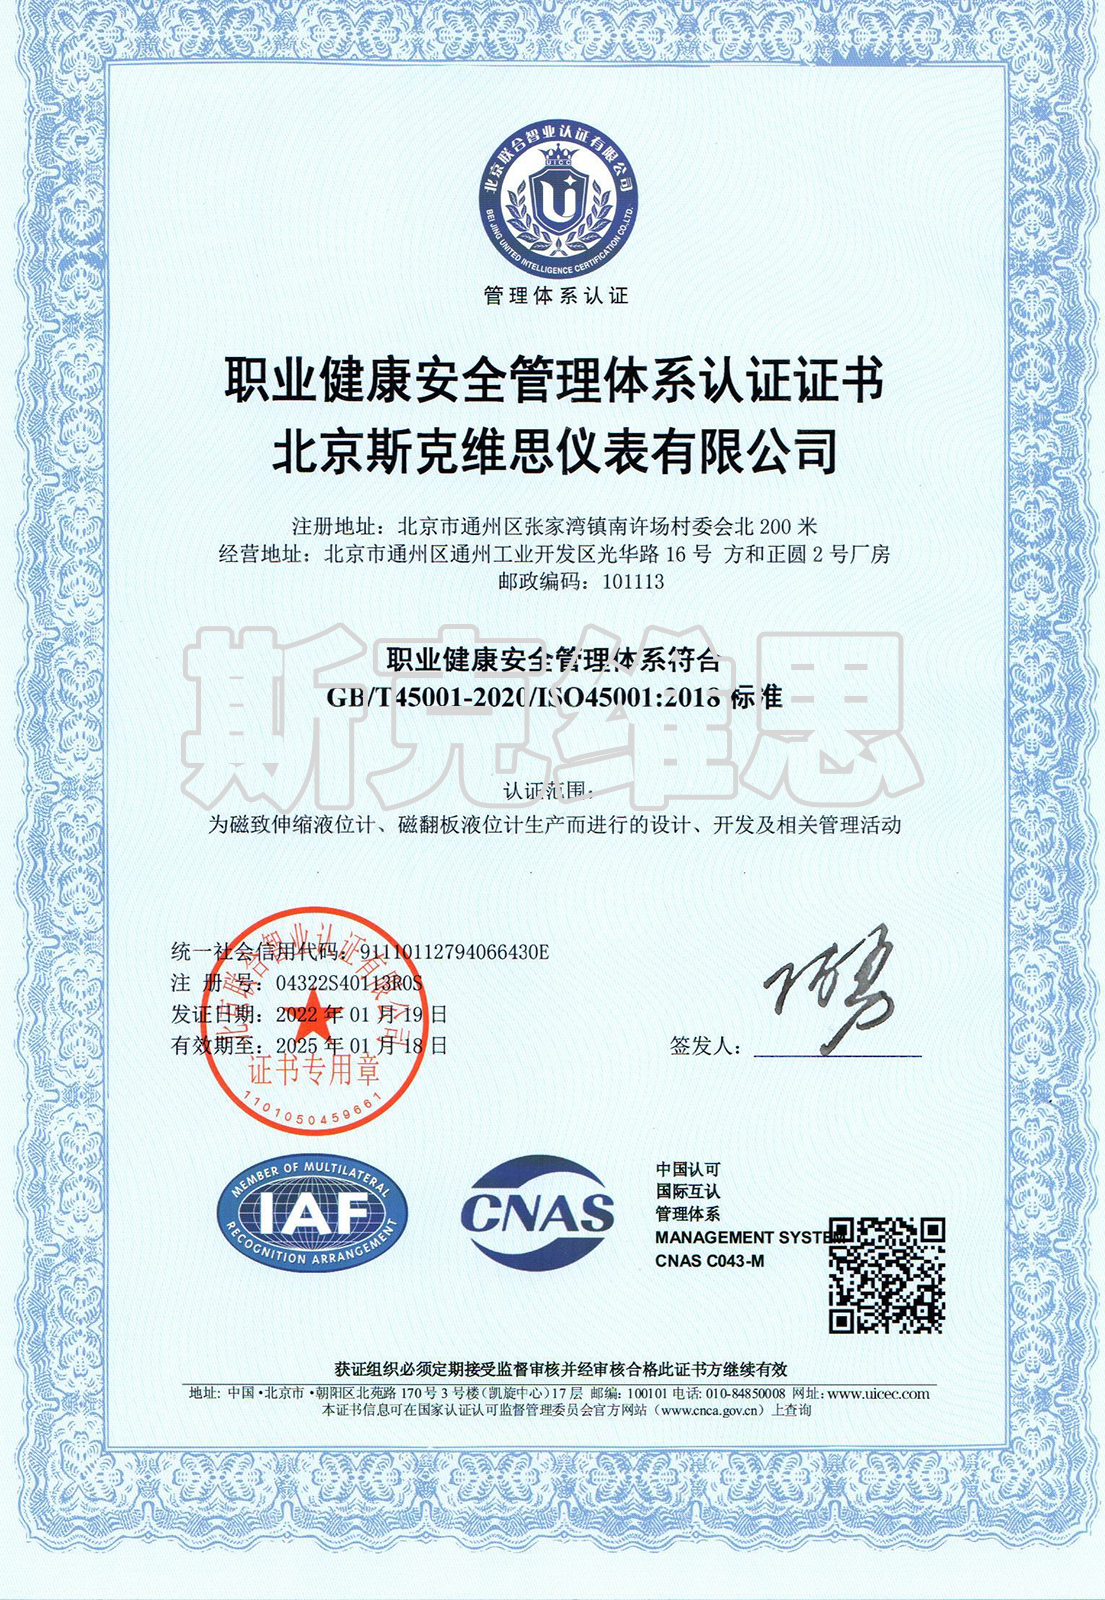 06-职业健康安全管理体系证书-中文.jpg